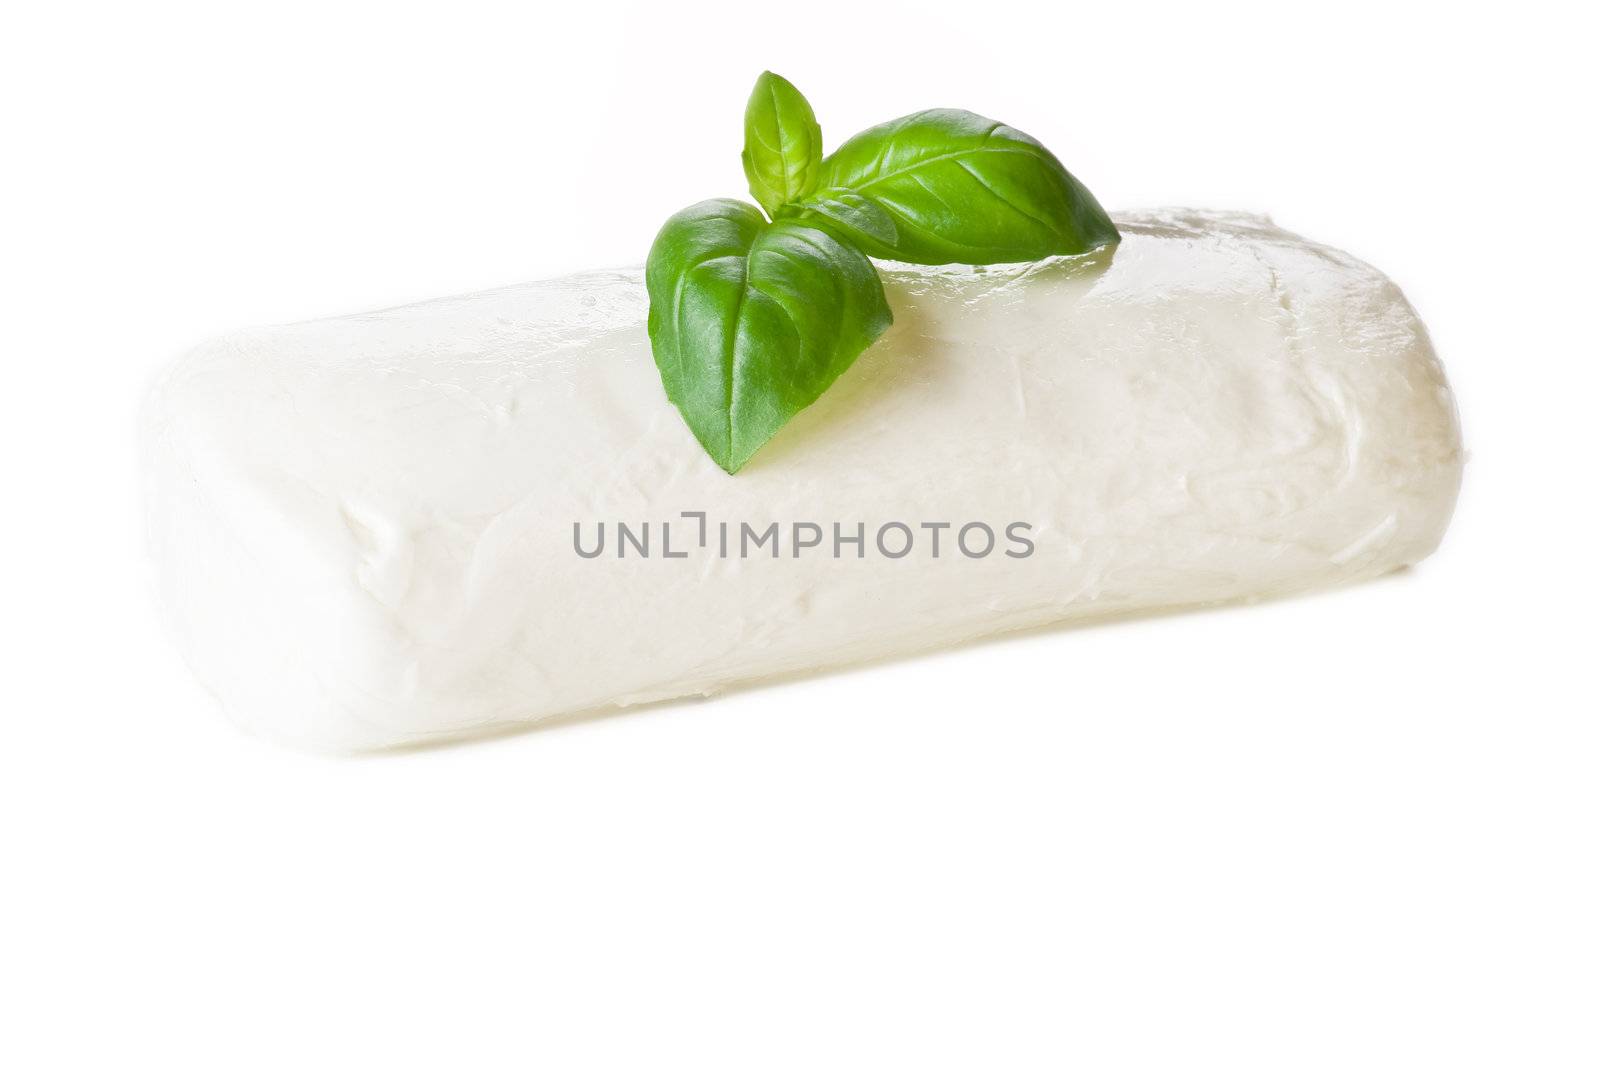 Basil leaf on mozzarella by caldix